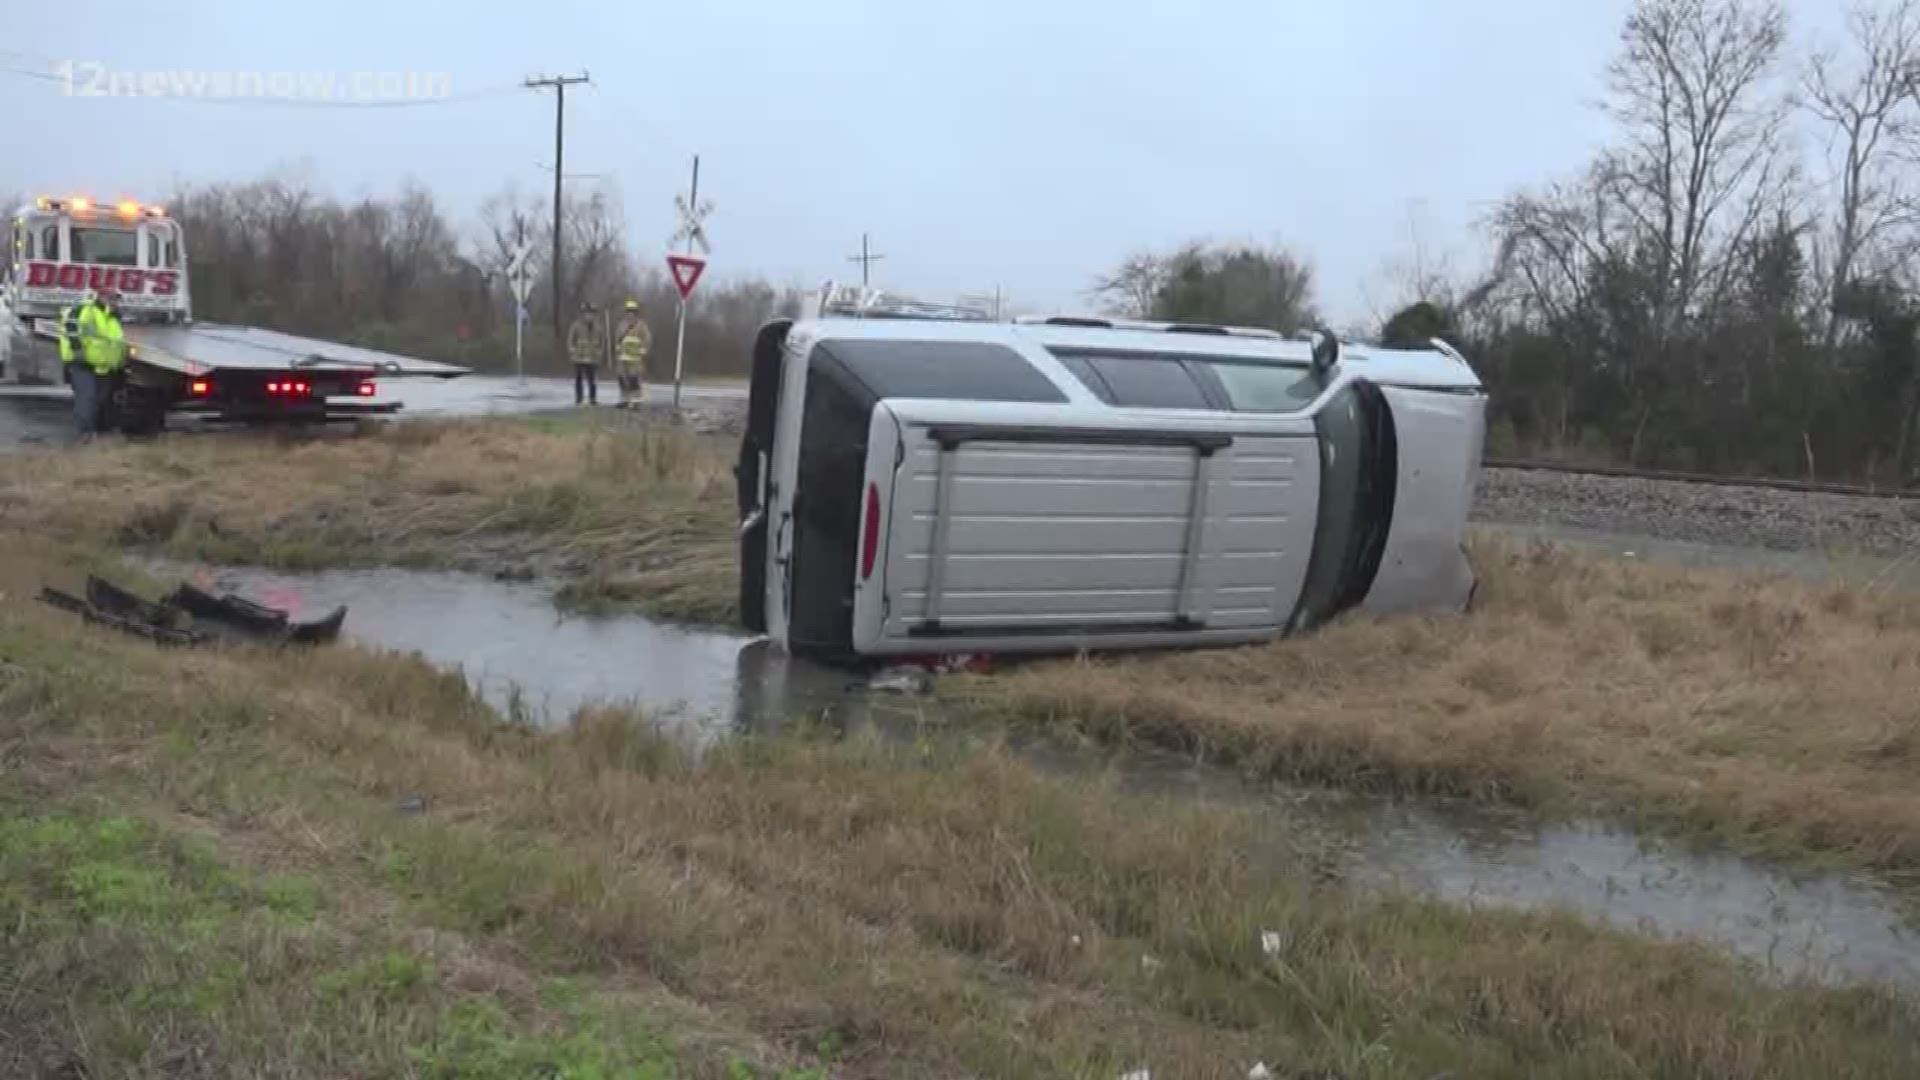 Wednesday morning rollover wreck blamed on wet roads